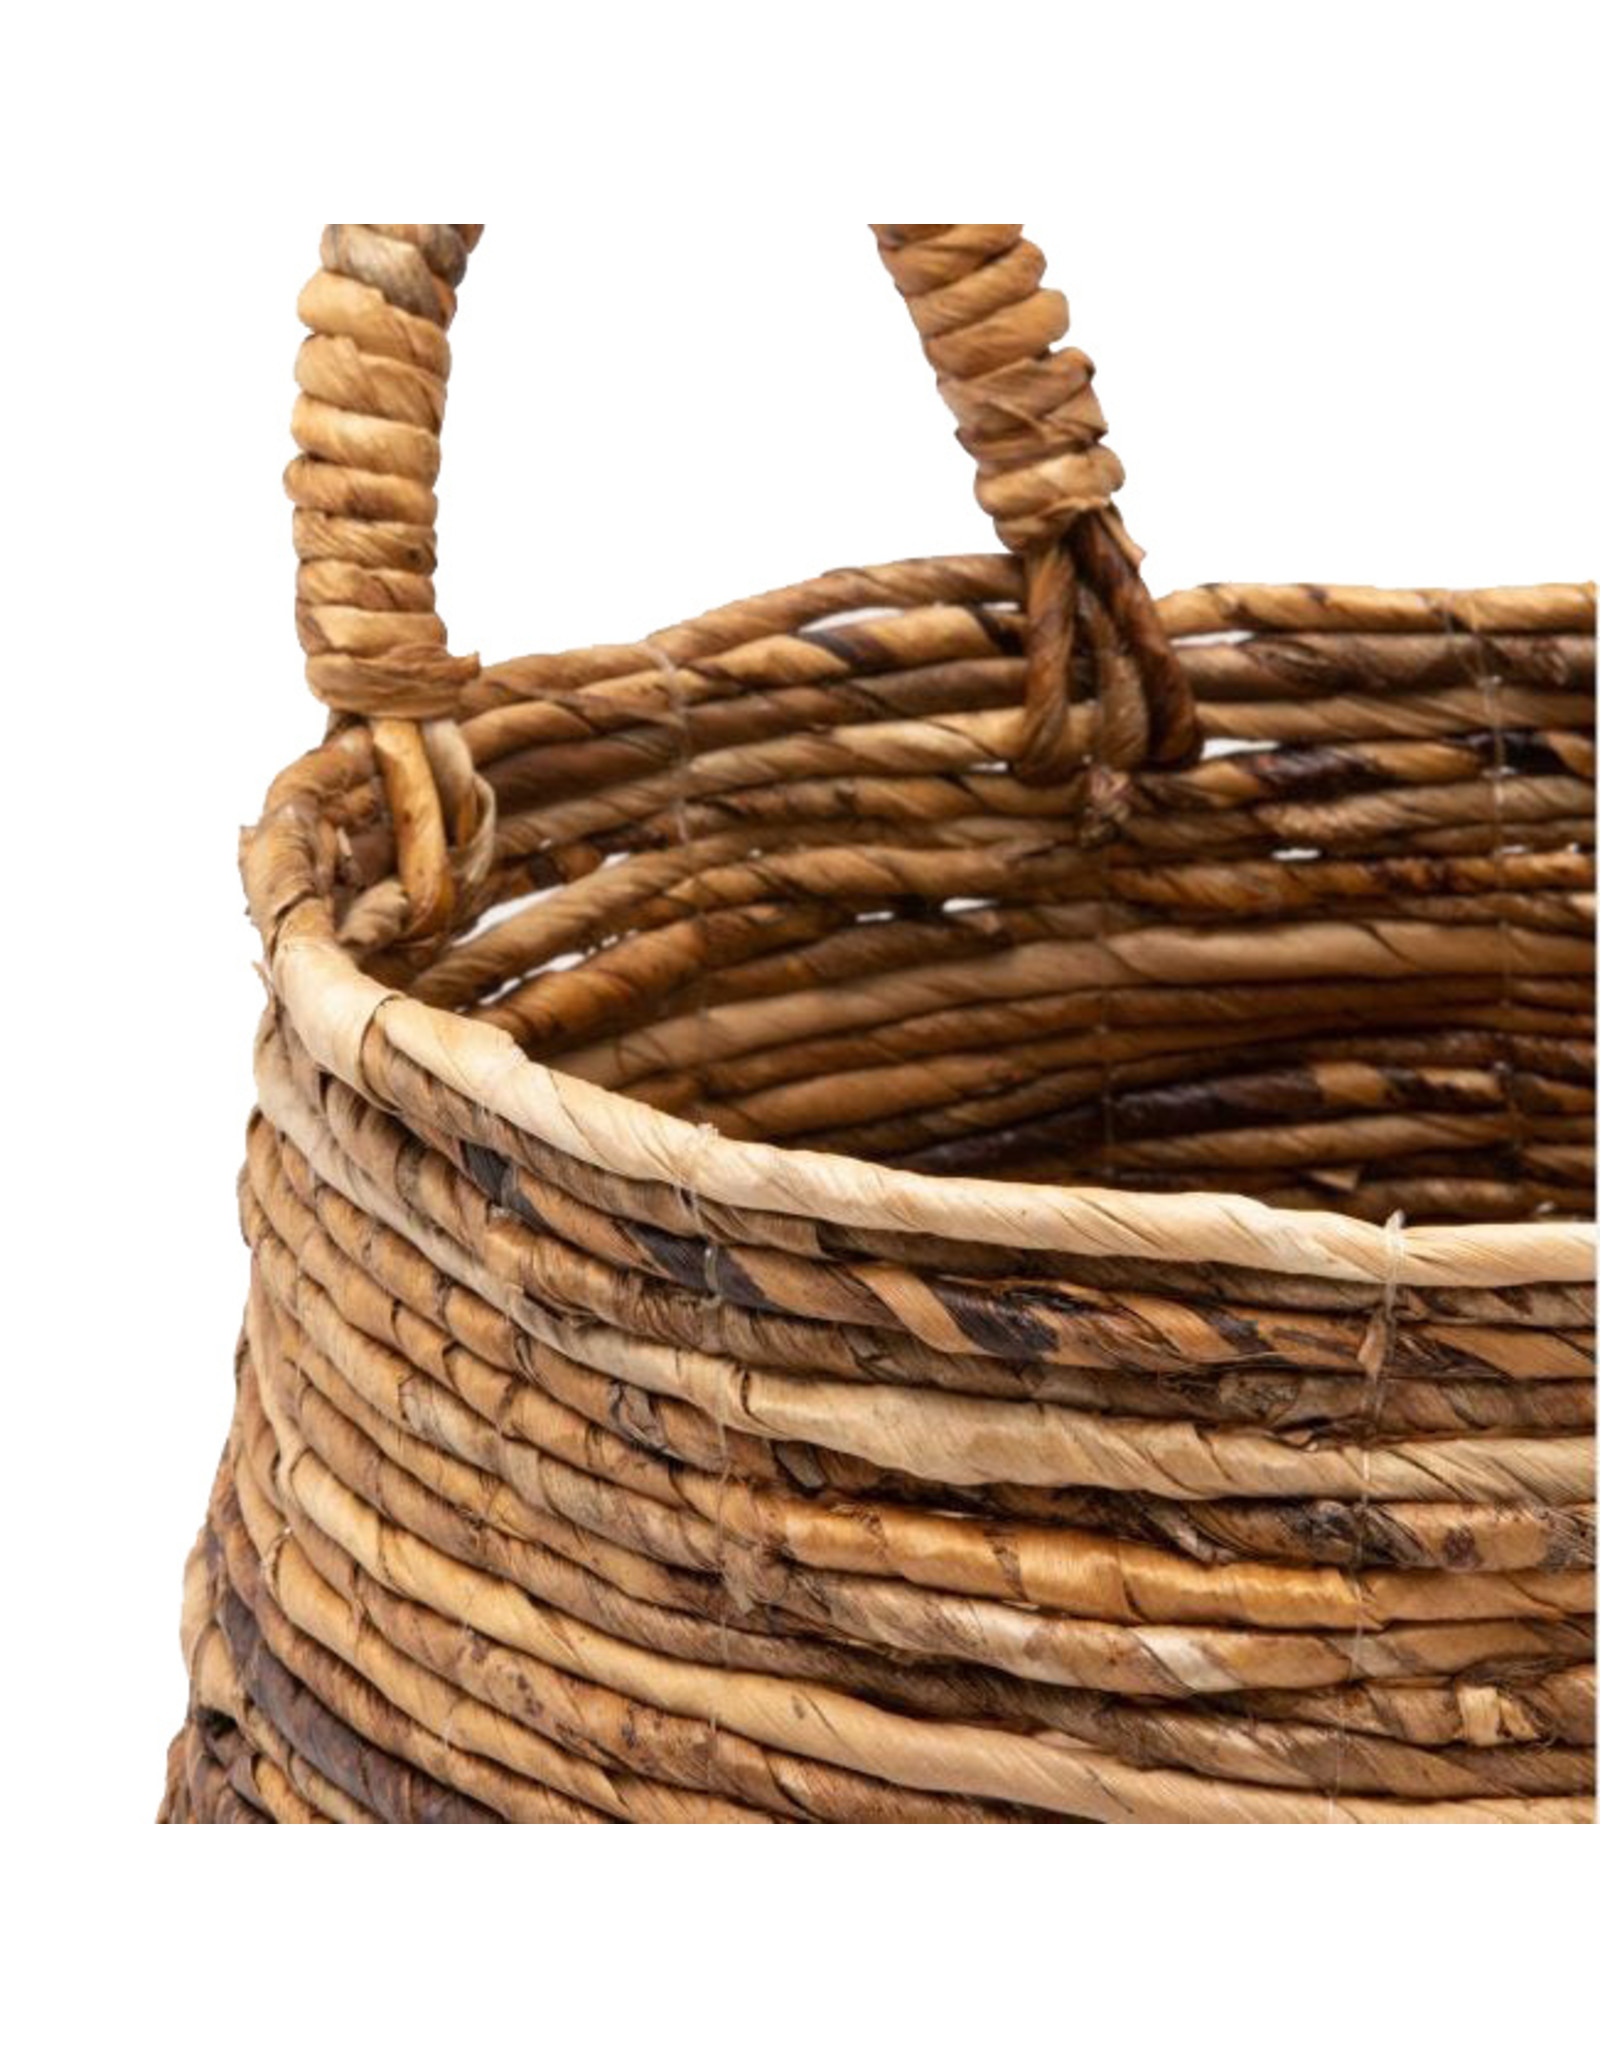 Natural Nested Basket, Lg